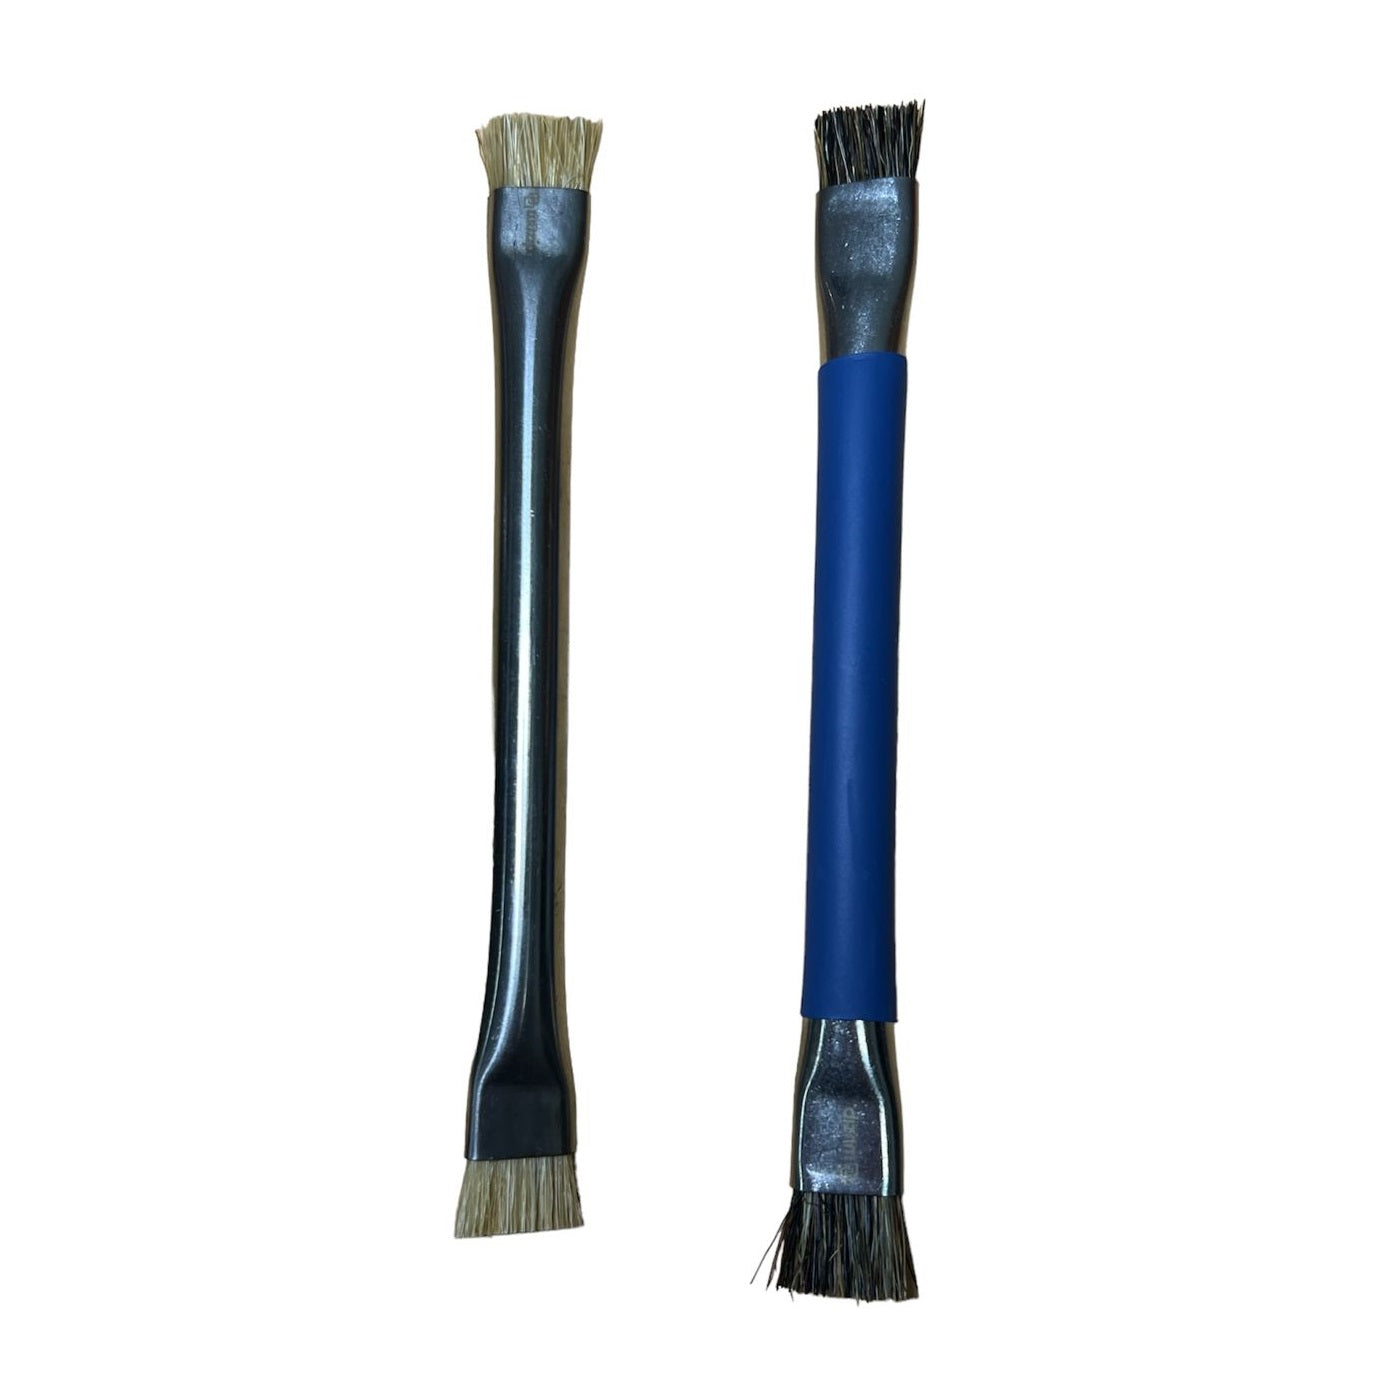 Cepillo limpieza placa doble - Double-head  brush